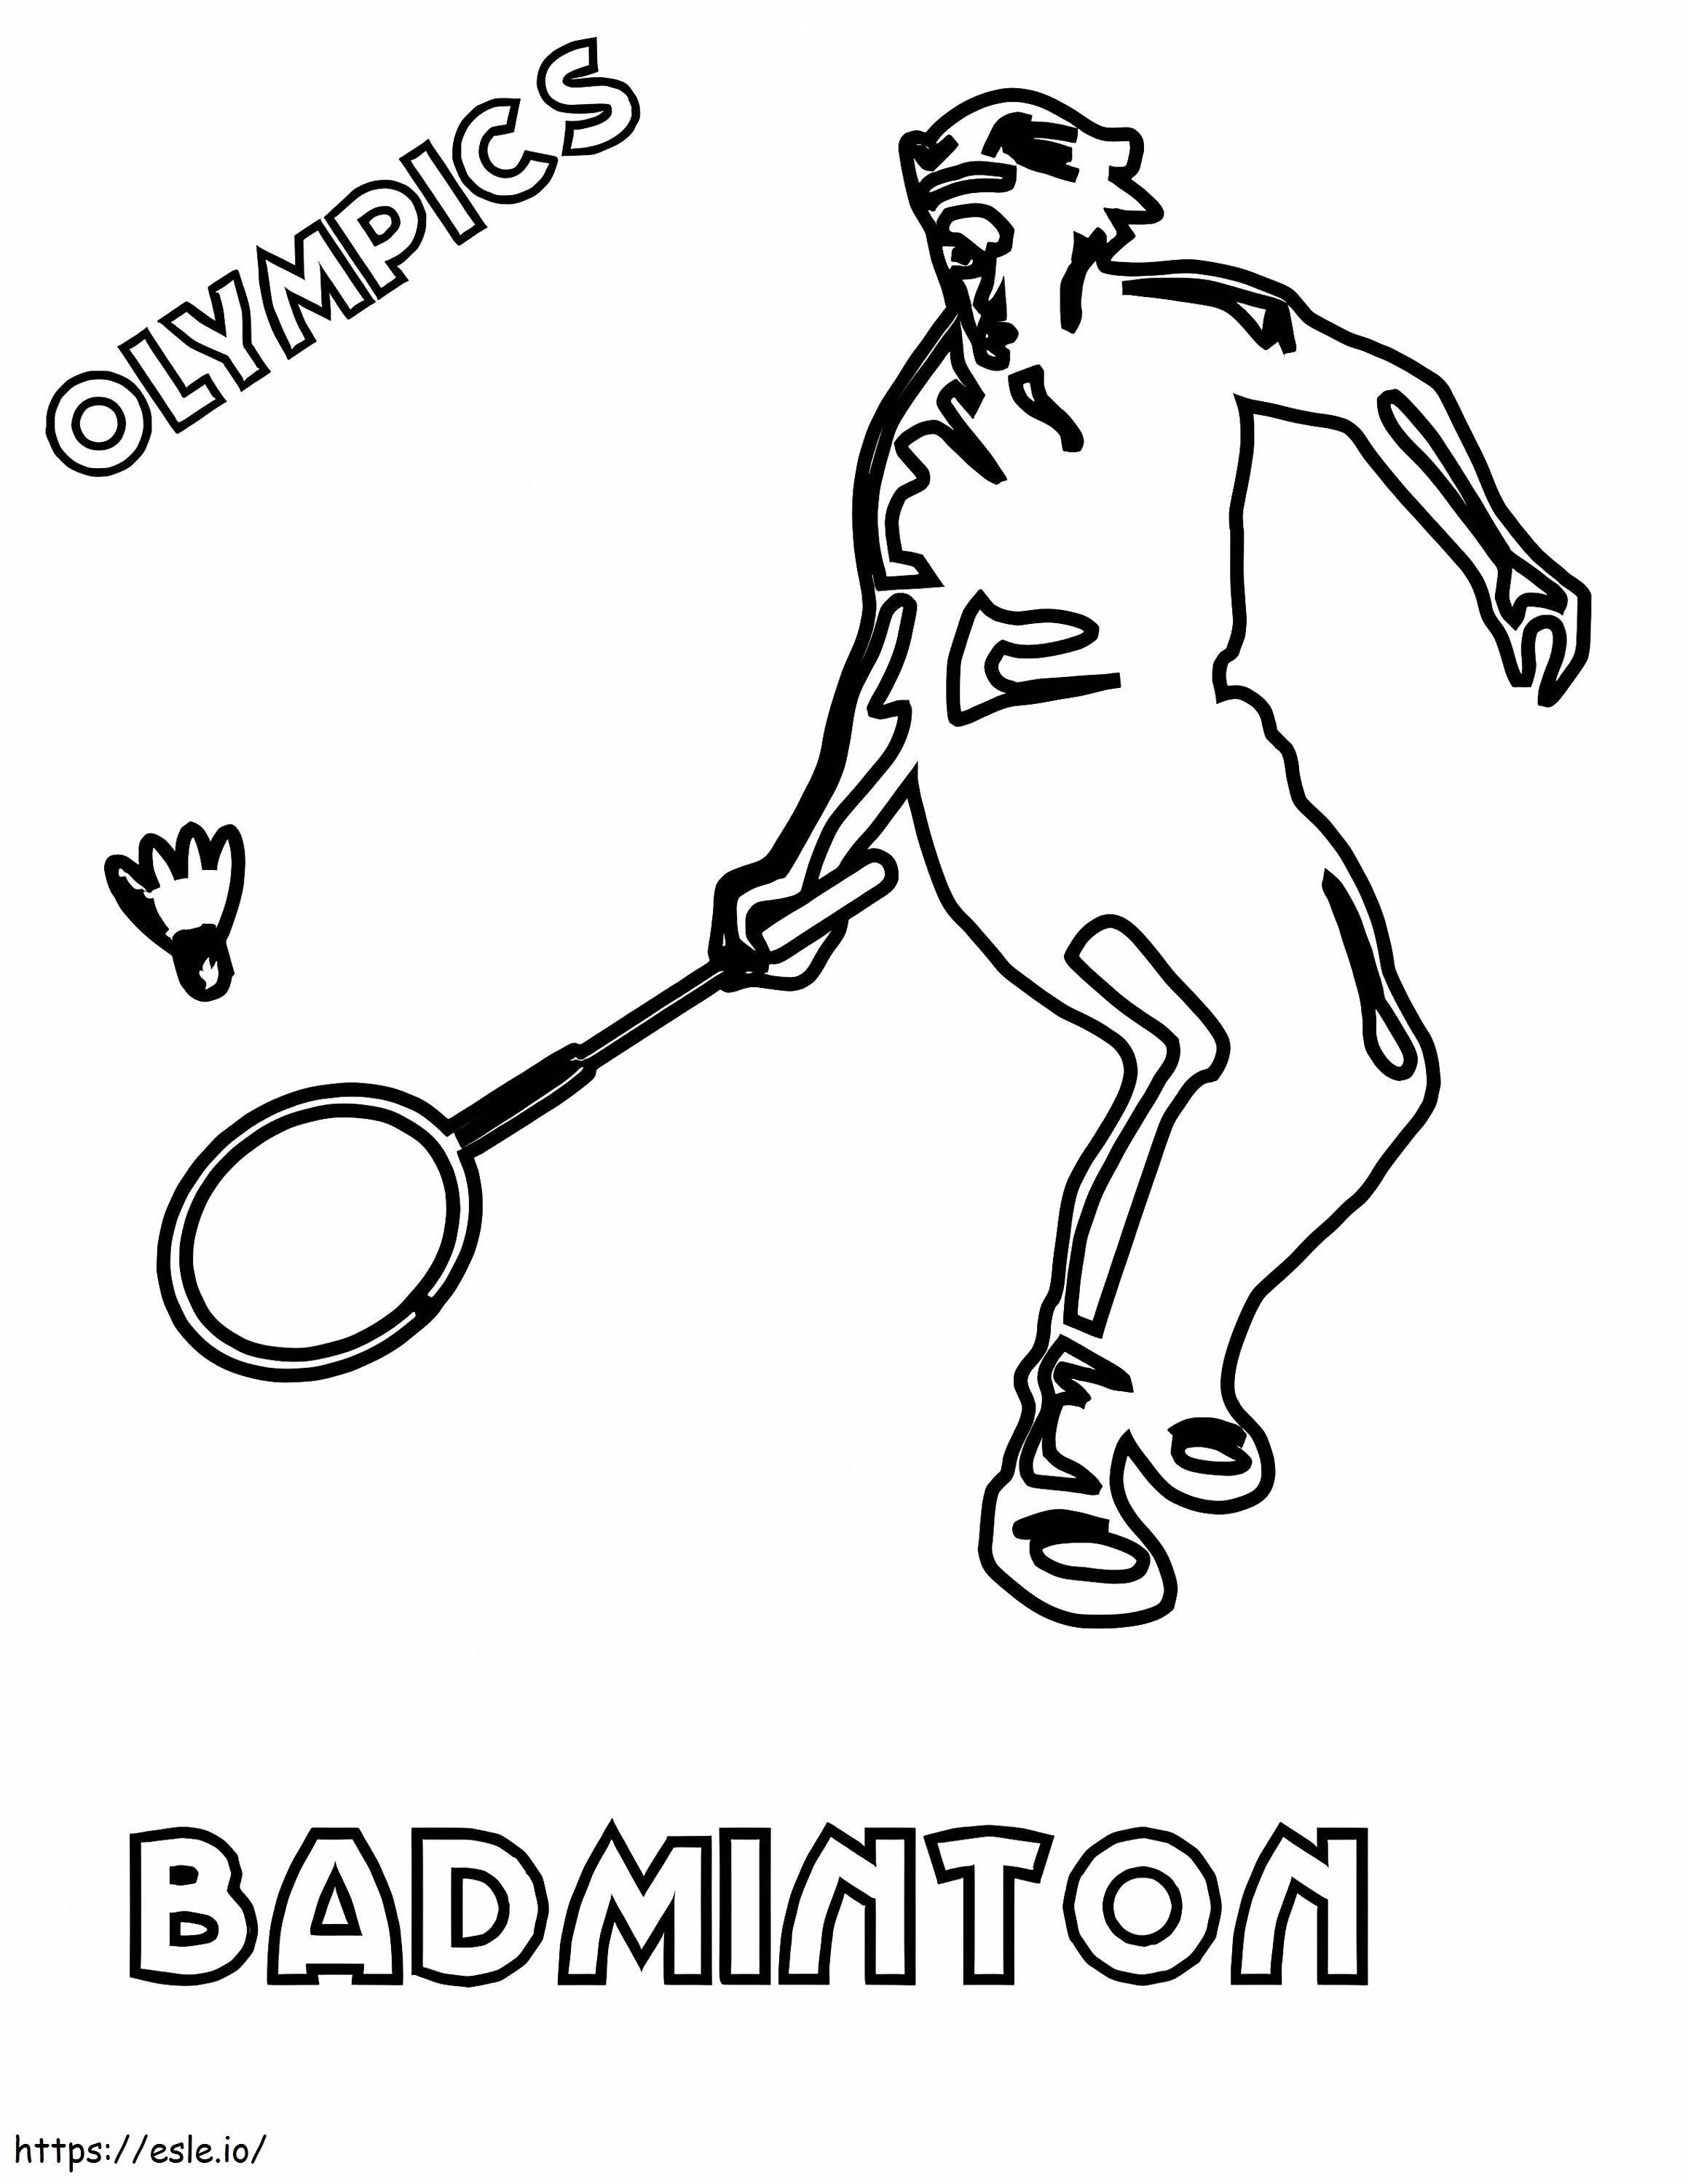 Olympische Badminton kleurplaat kleurplaat